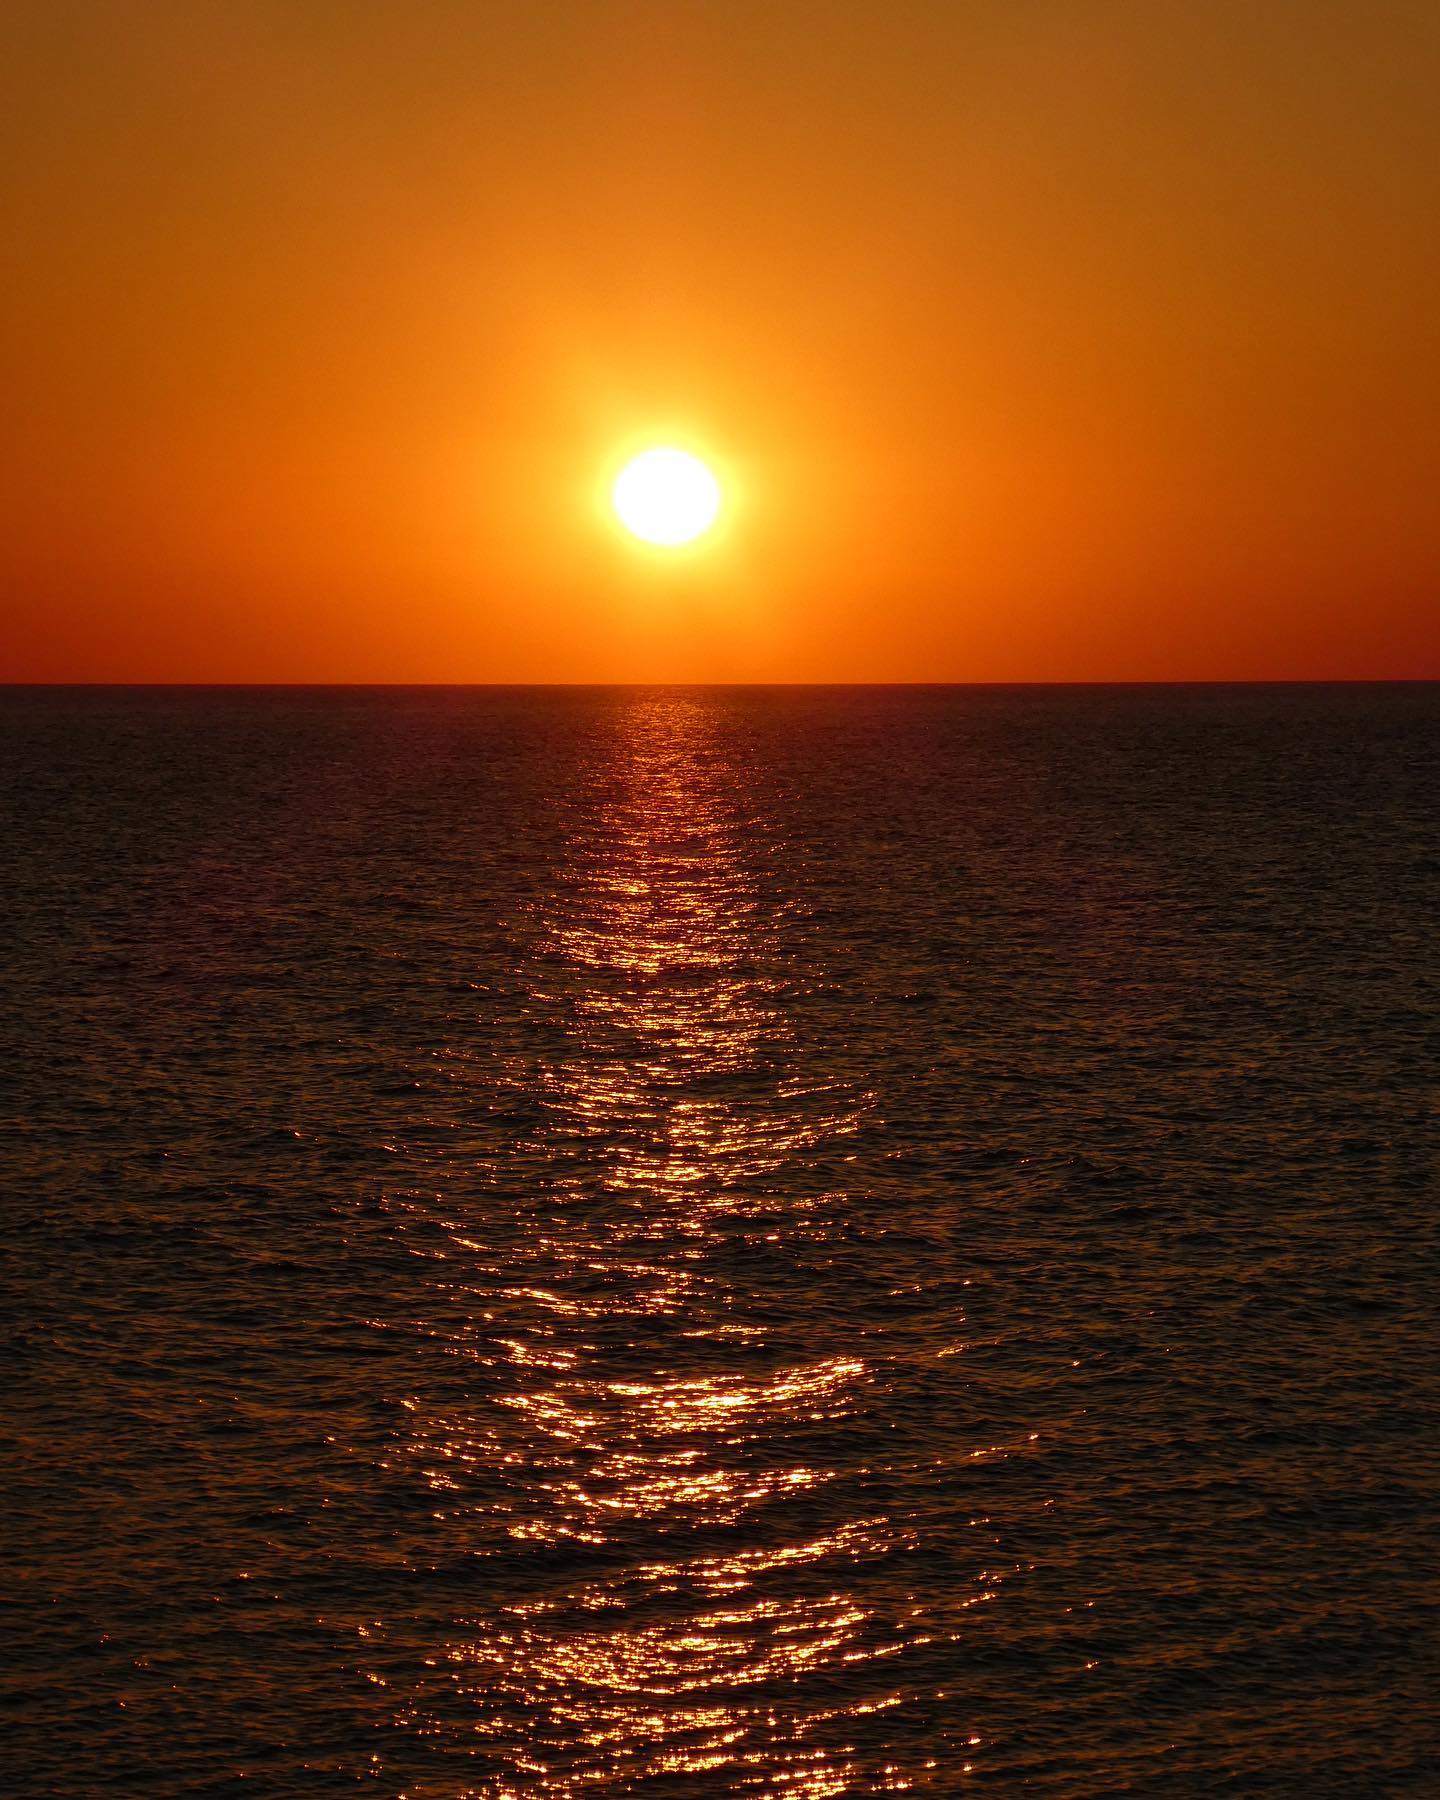 È praticamente impossibile guardare un tramonto e non sognare.
(Bernard Williams)